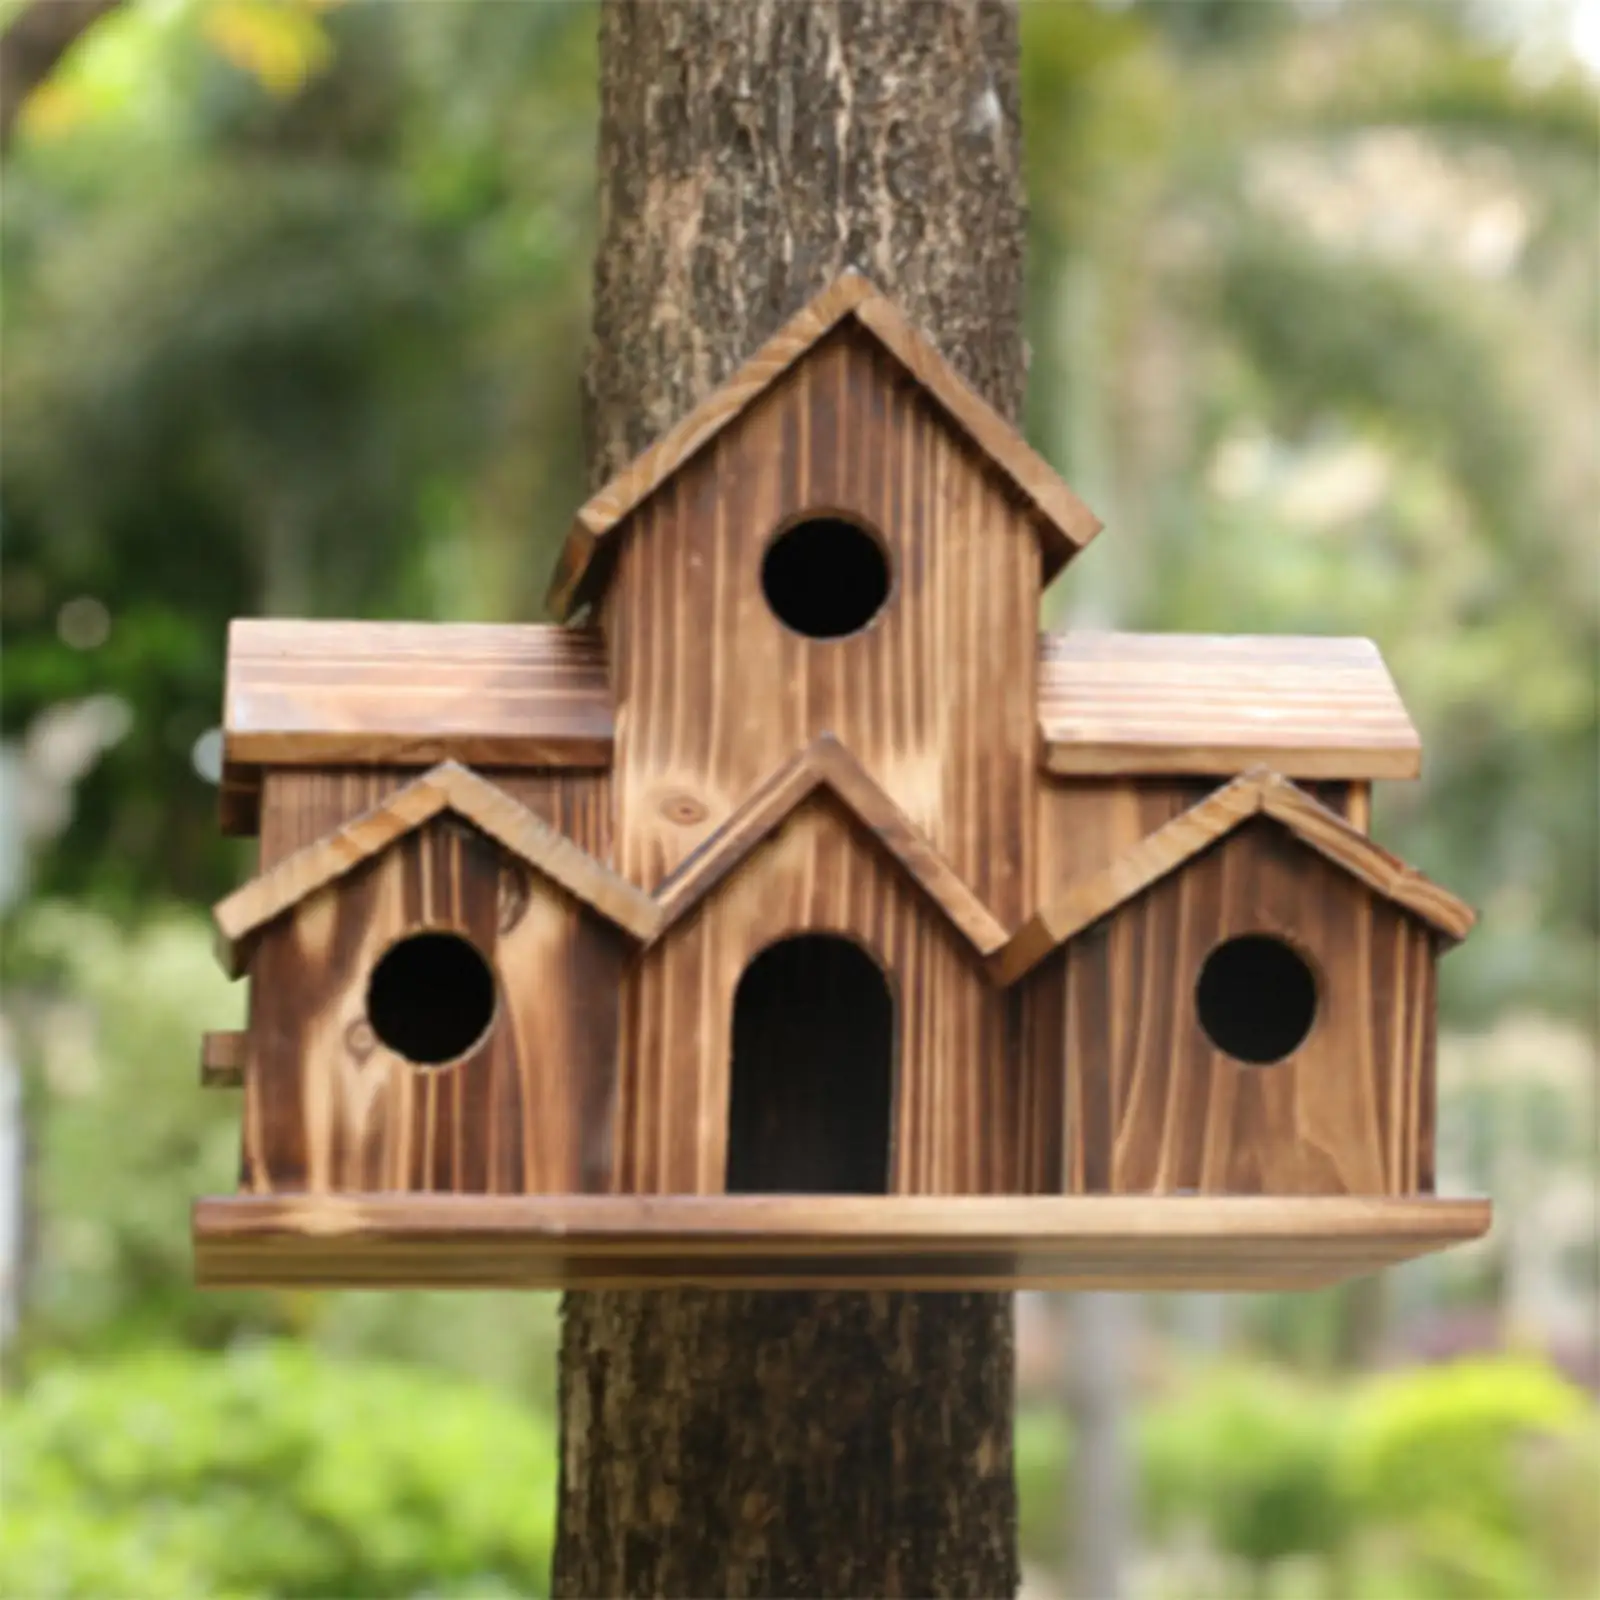 Wooden Bird House Hummingbird Nest Handmade Birds Hut Decor Supplies Hangable Bird Cage for Home Courtyard Outdoor Window Decor